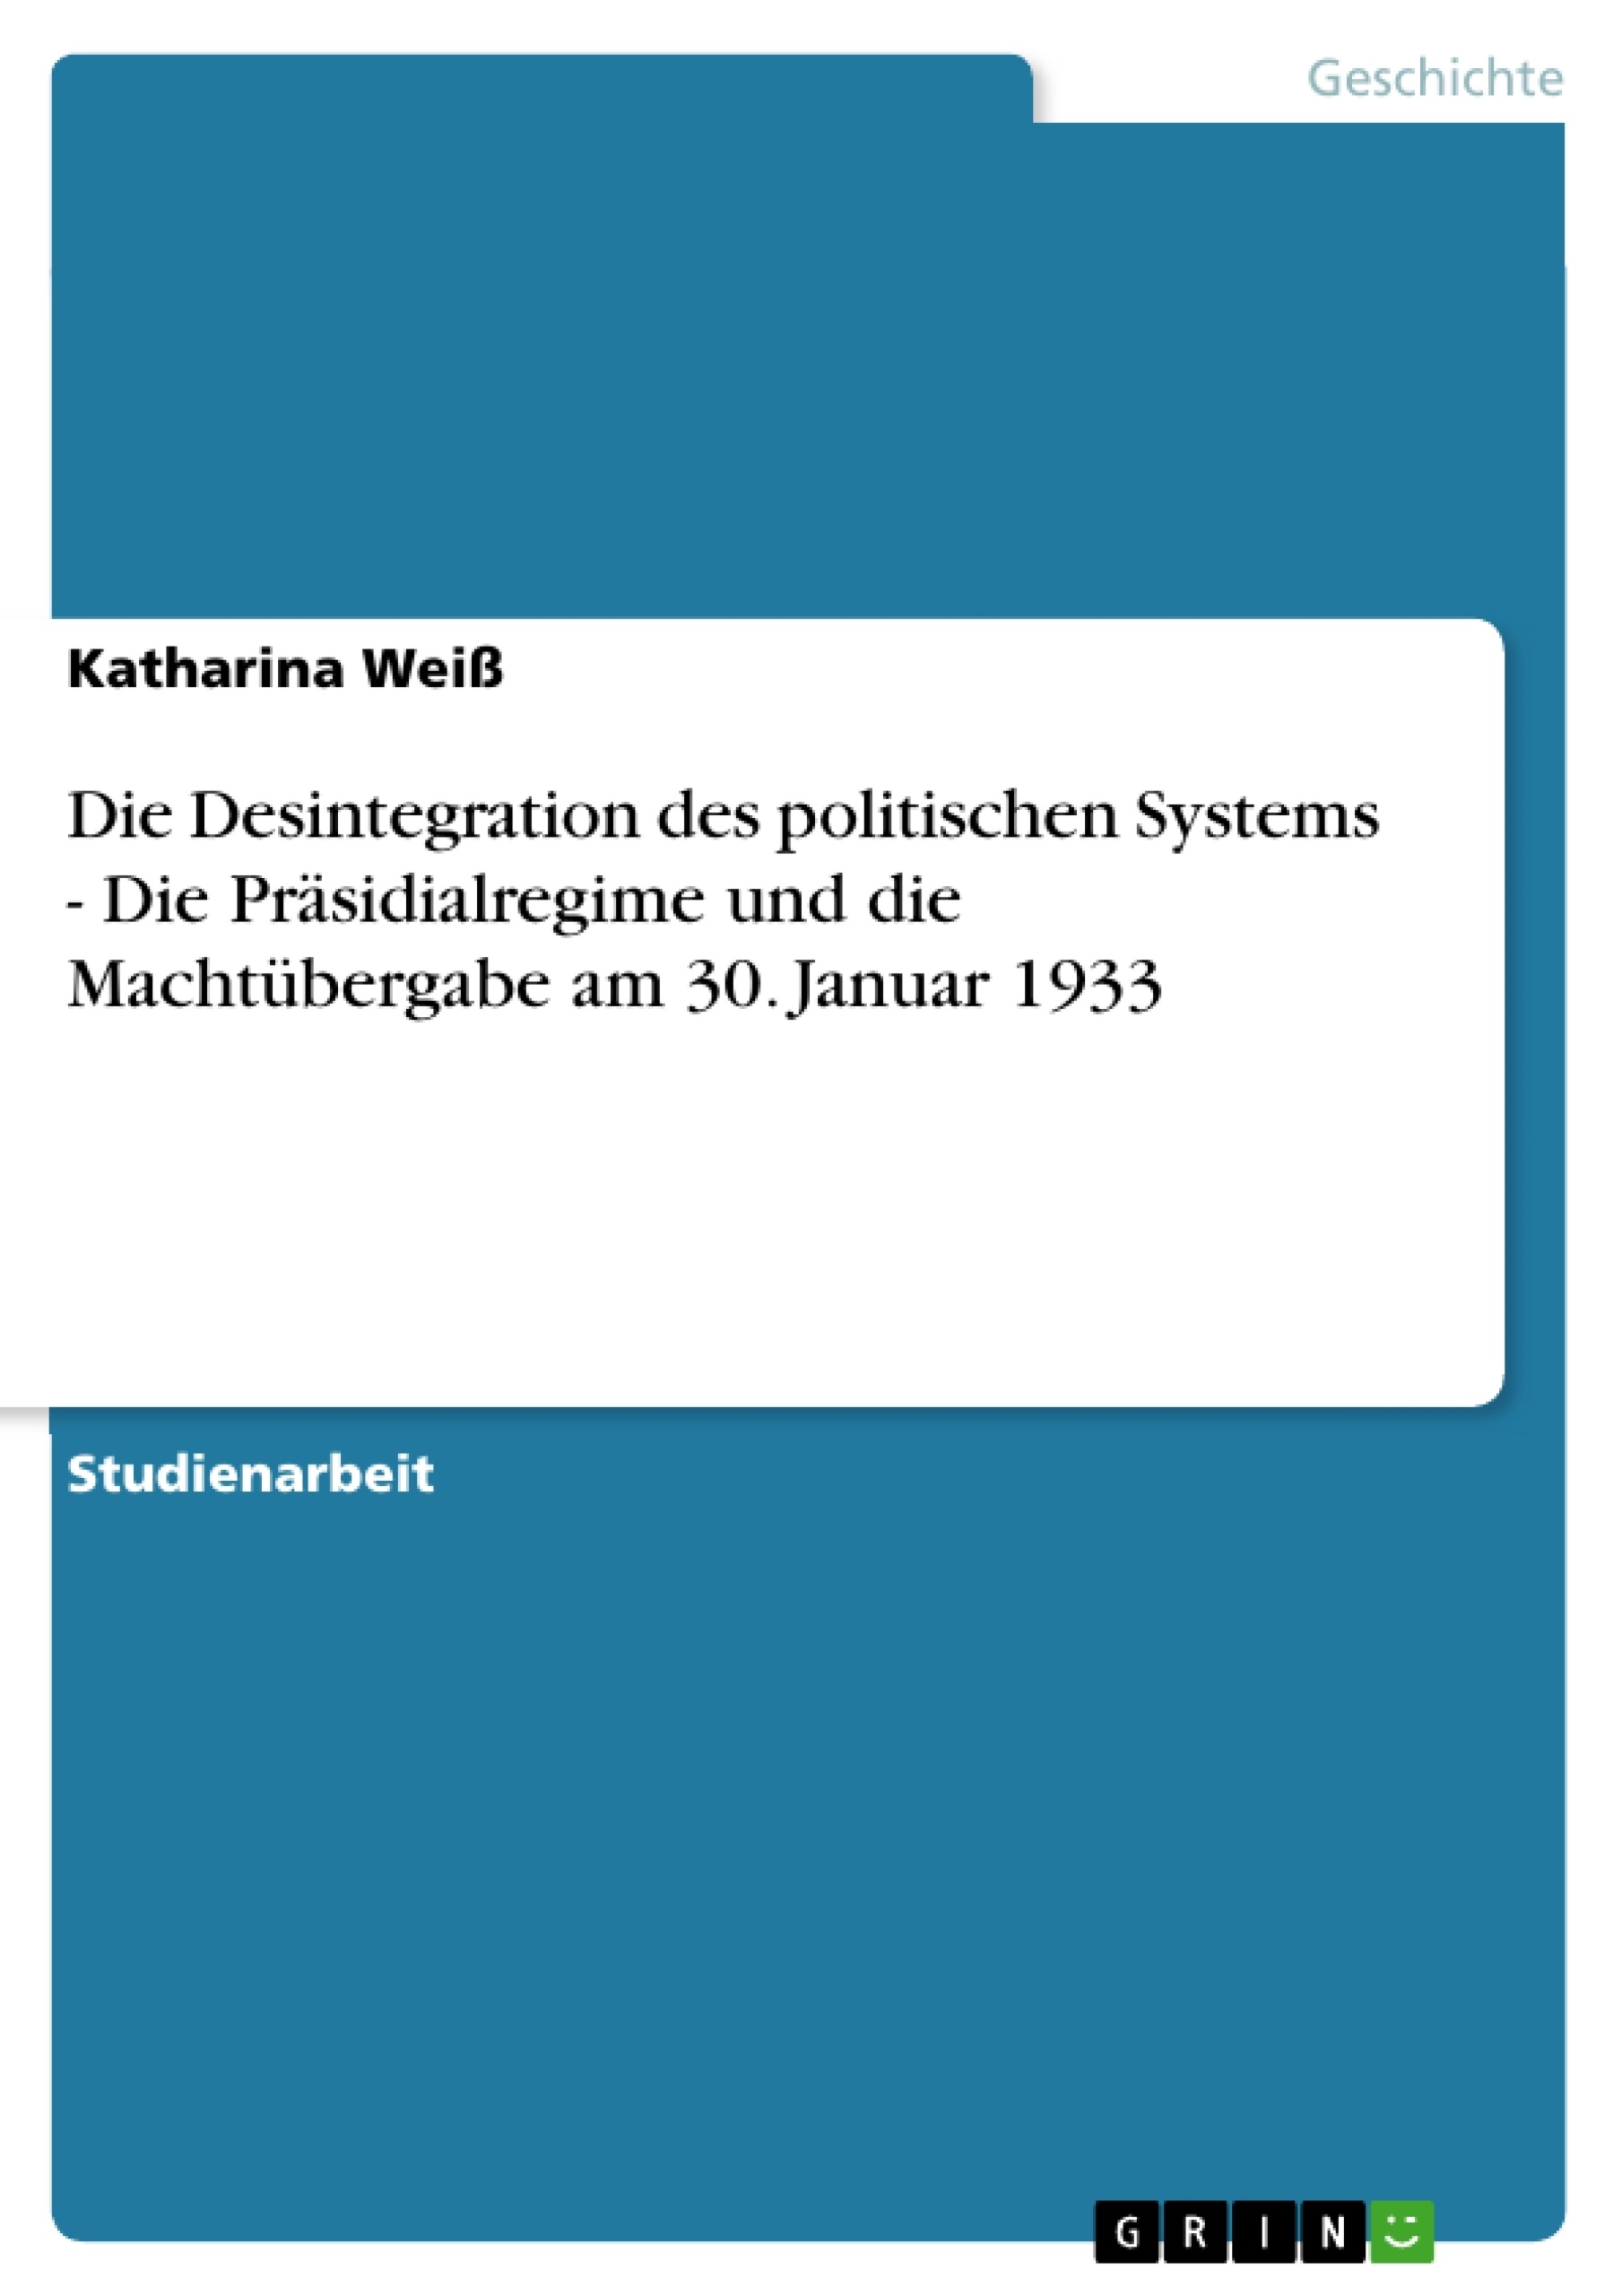 Title: Die Desintegration des politischen Systems - Die Präsidialregime und die Machtübergabe am 30. Januar 1933 